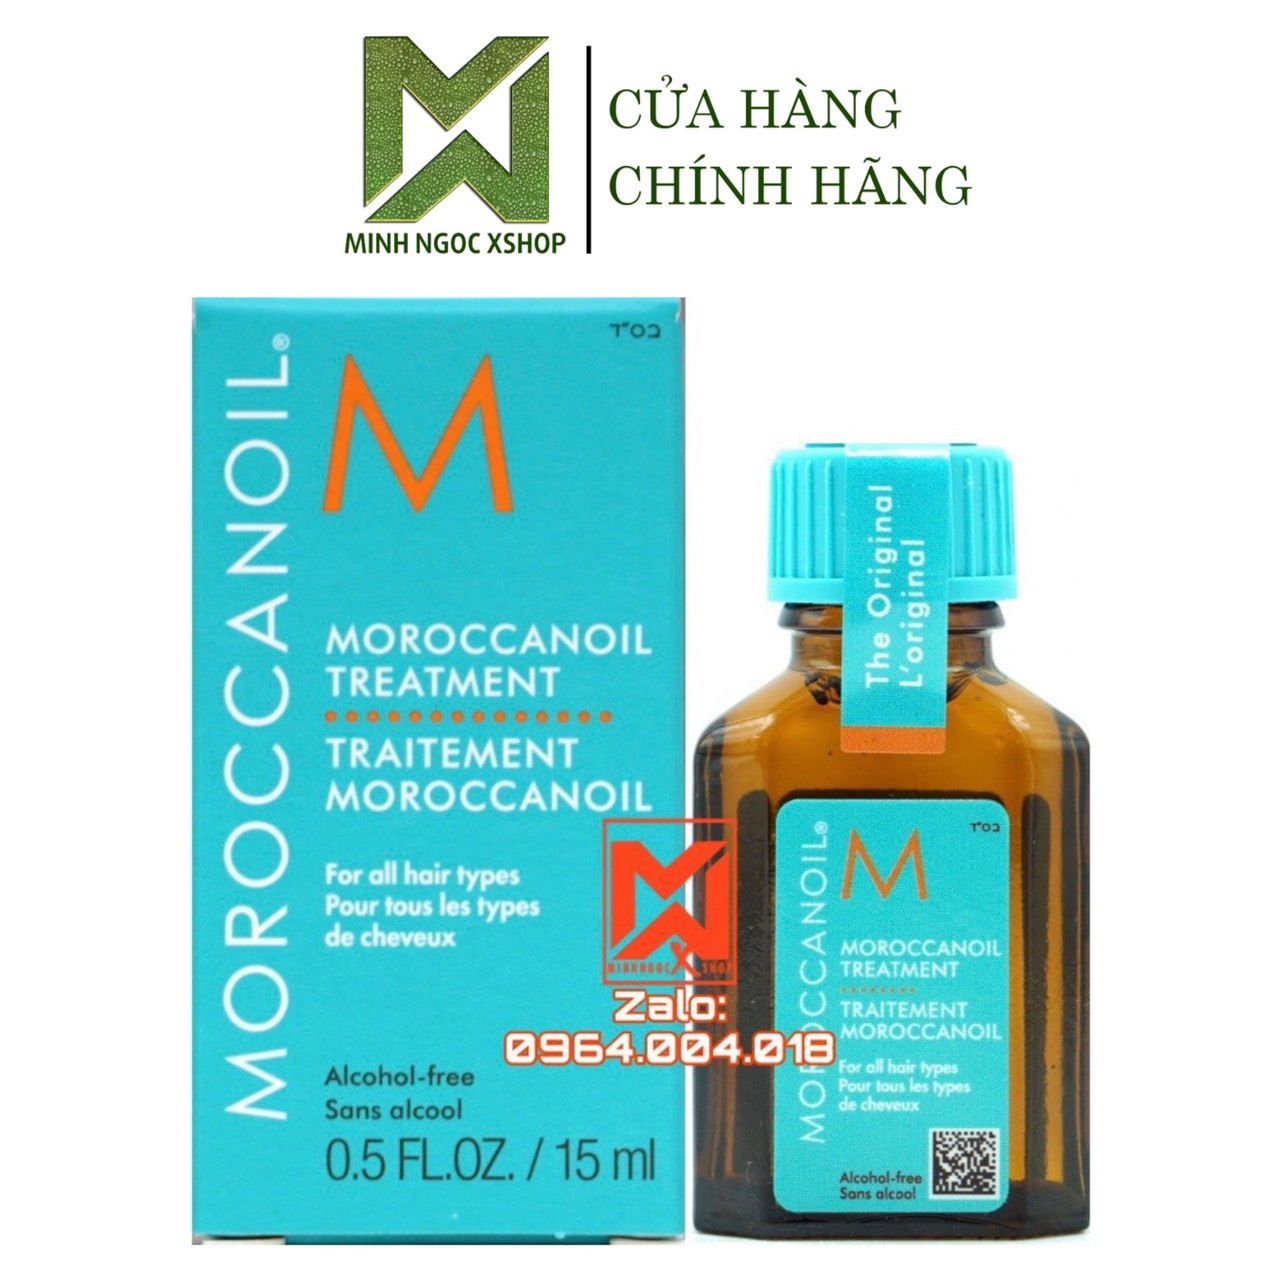 Tinh dầu dưỡng tóc Moroccanoil Treatment Original 10ML - 15ML - 25ML - 100ML - 125ML - 200ML chính hãng